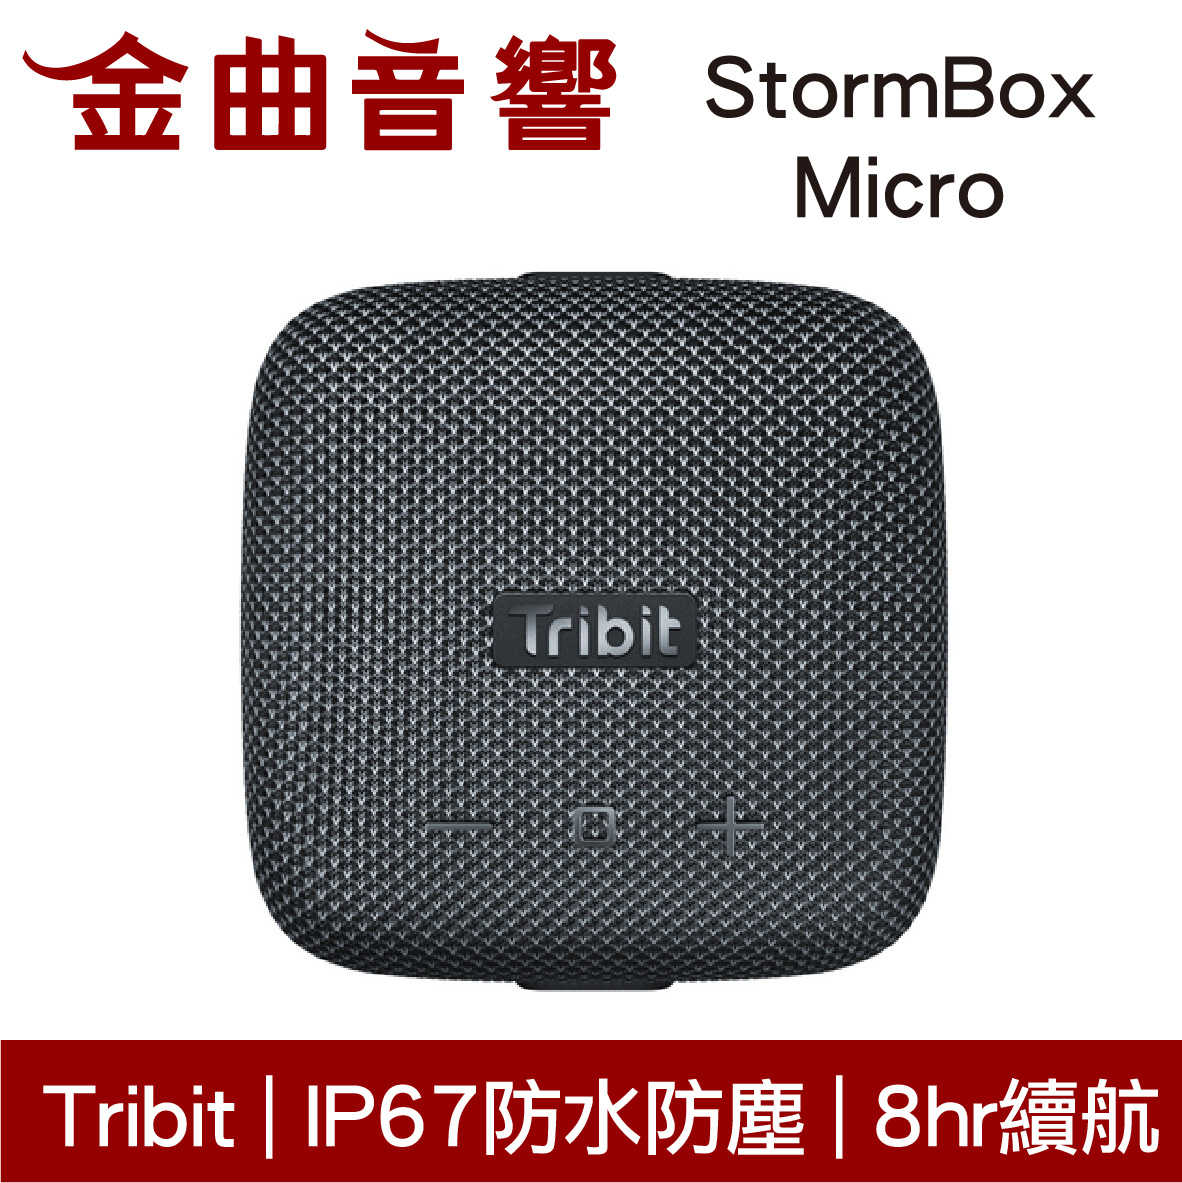 Tribit StormBox Micro 黑色 IP67 環繞音效 8hr續航 可攜式 藍牙 喇叭 | 金曲音響